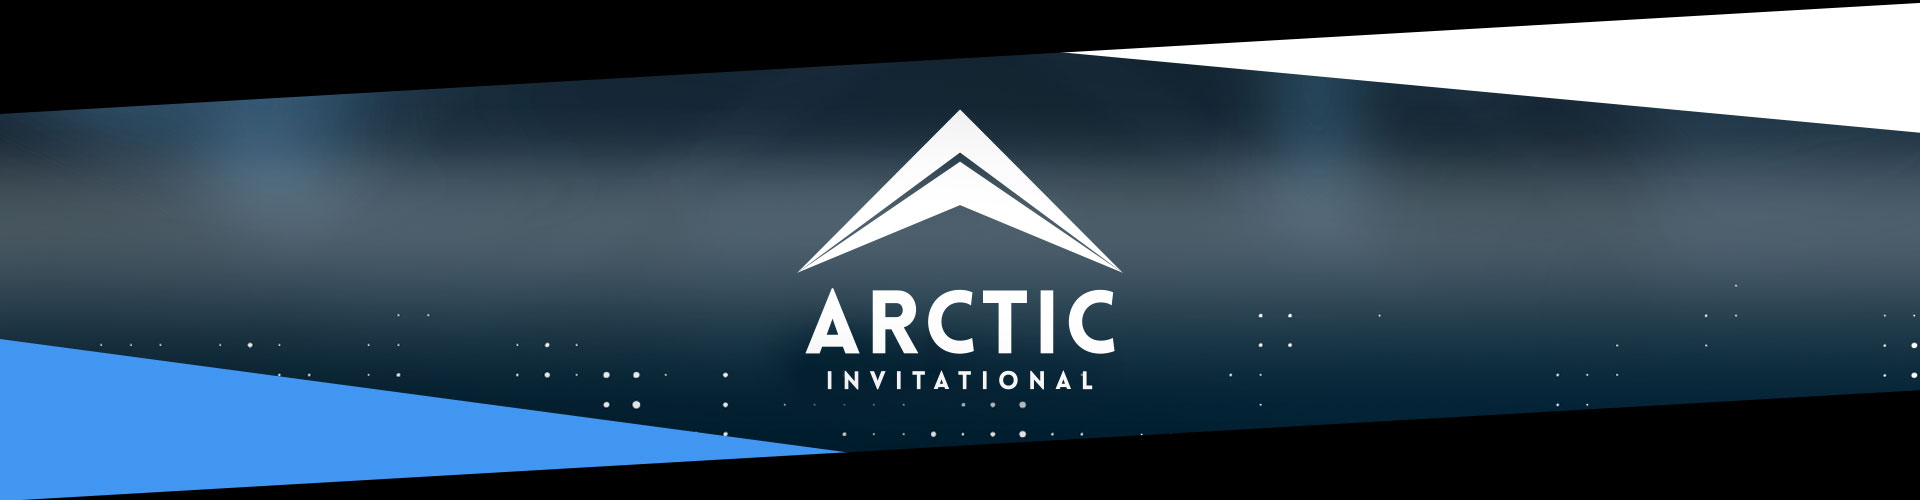 Eventsida för Arctic Invitational som hålls i Helsingfors, Finland.